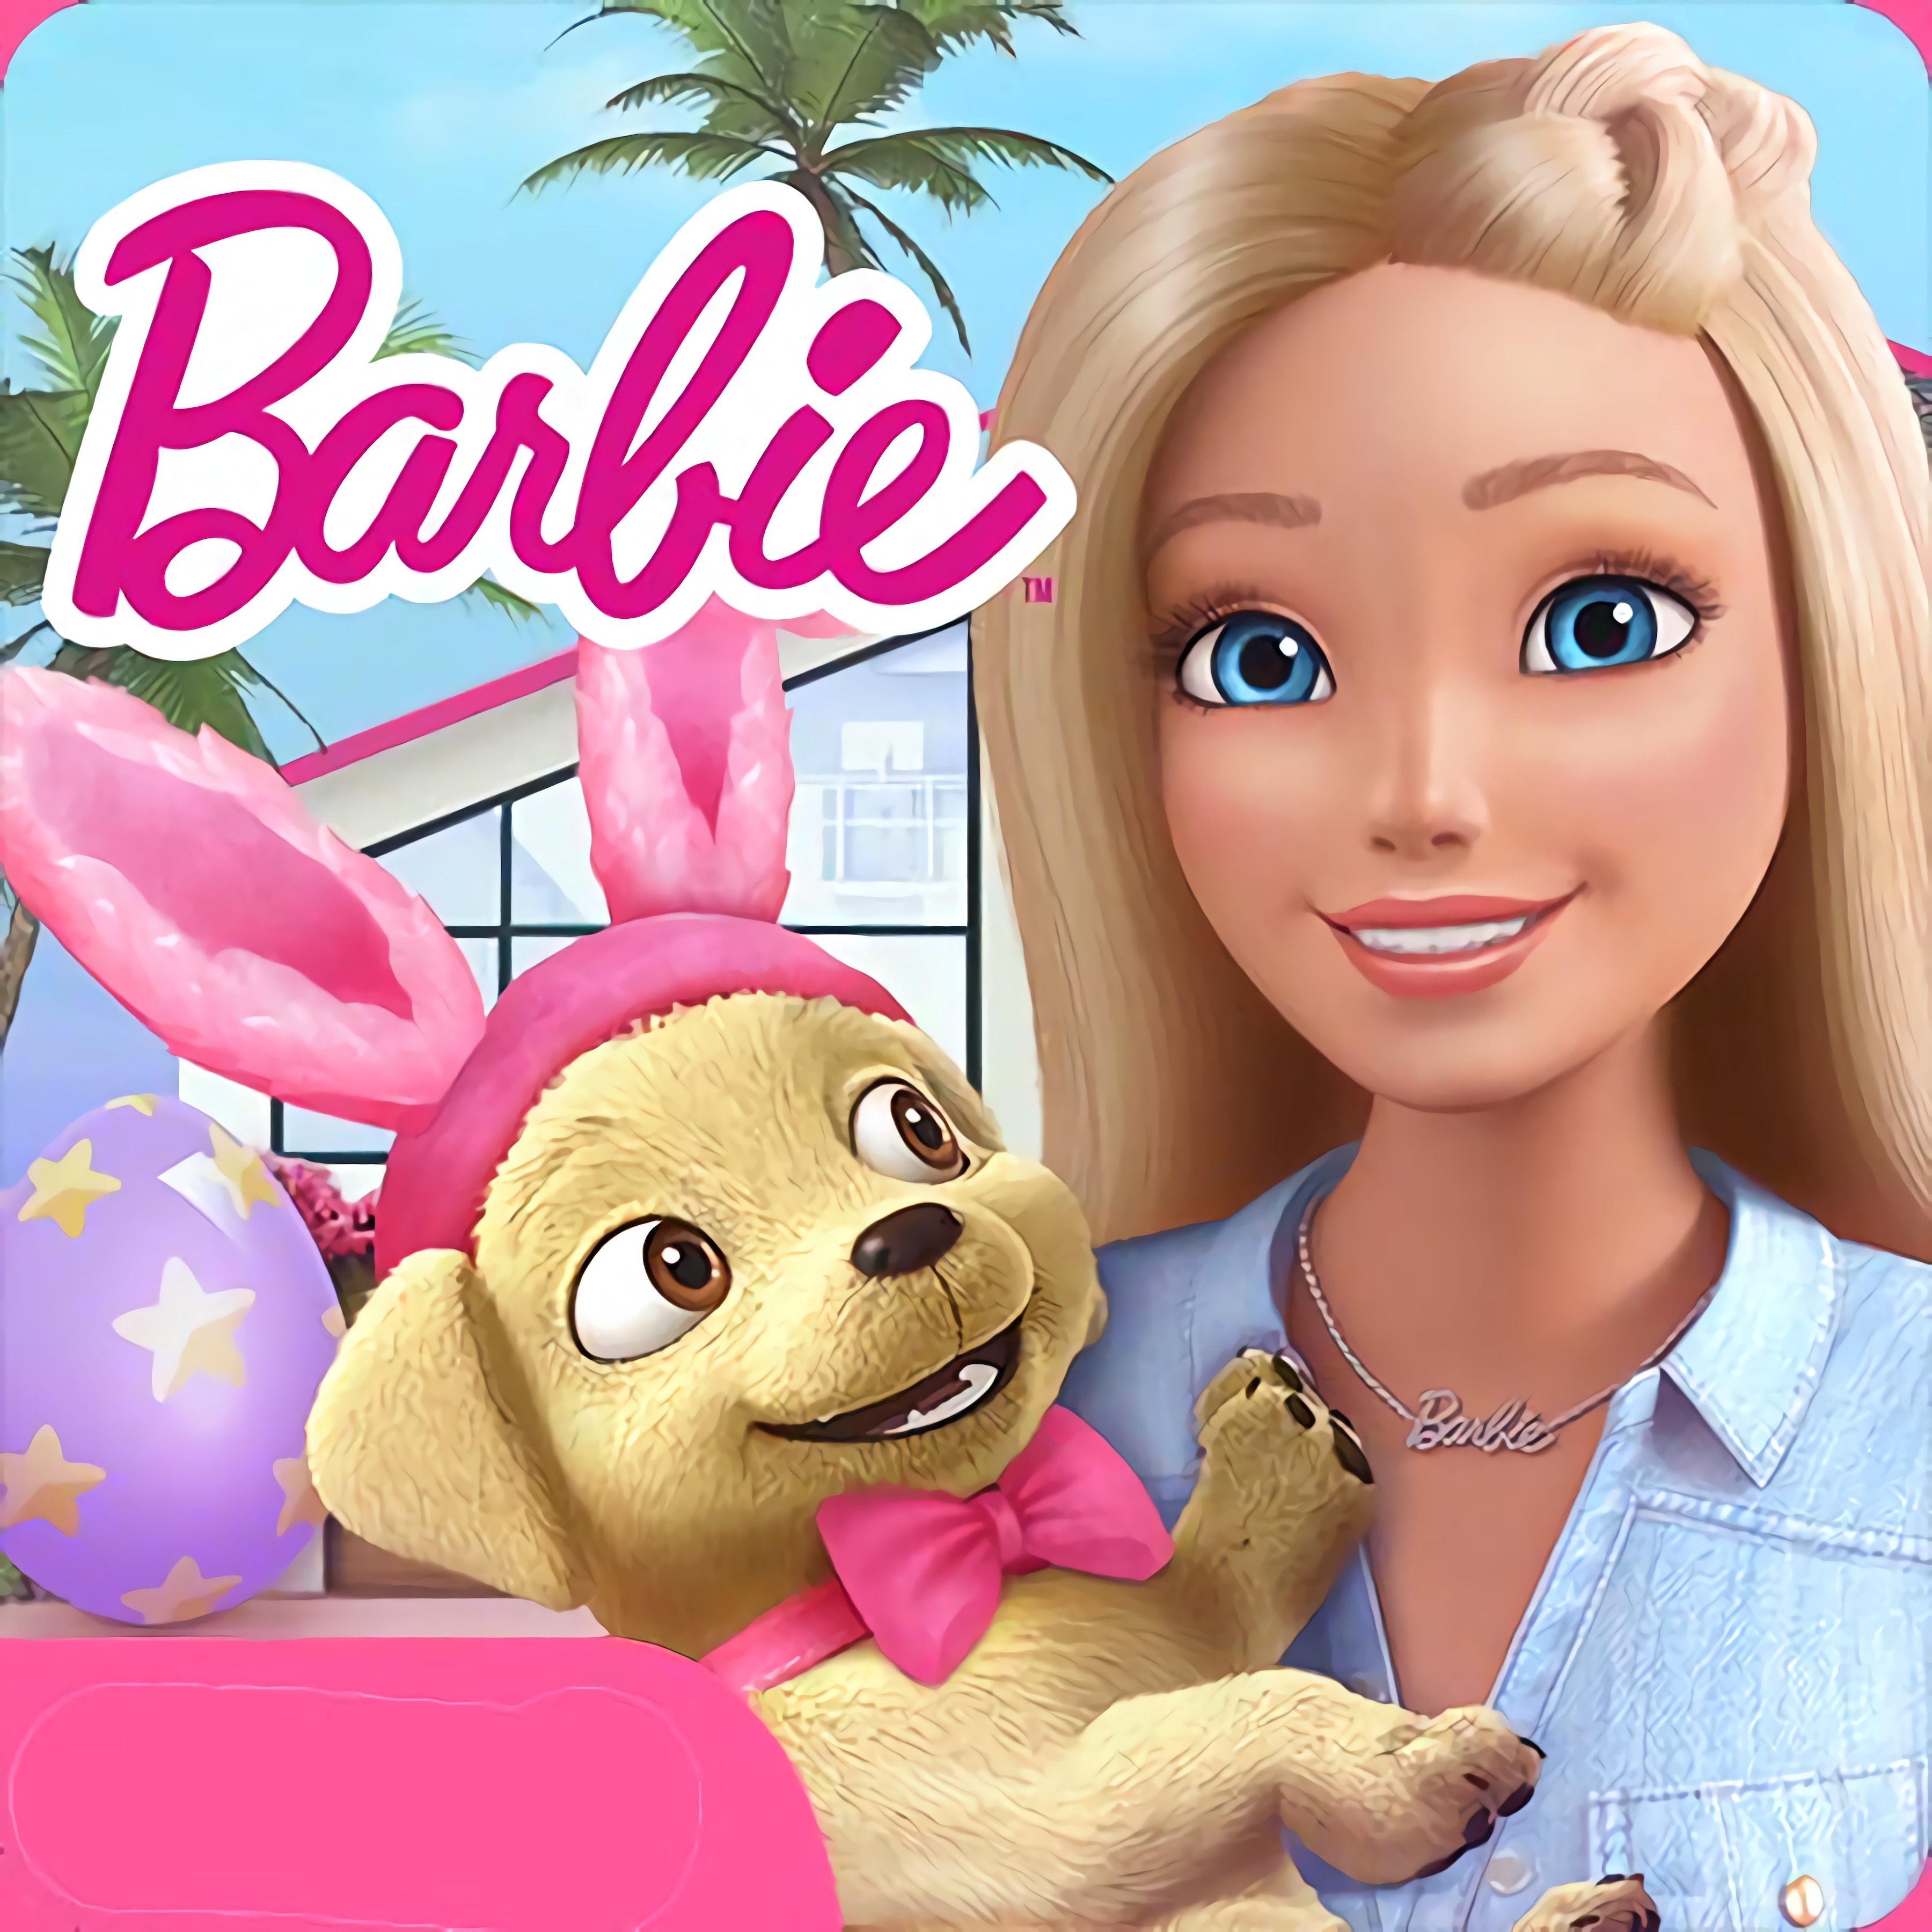 Jeux de Barbie 🕹️ Joue sur CrazyGames!